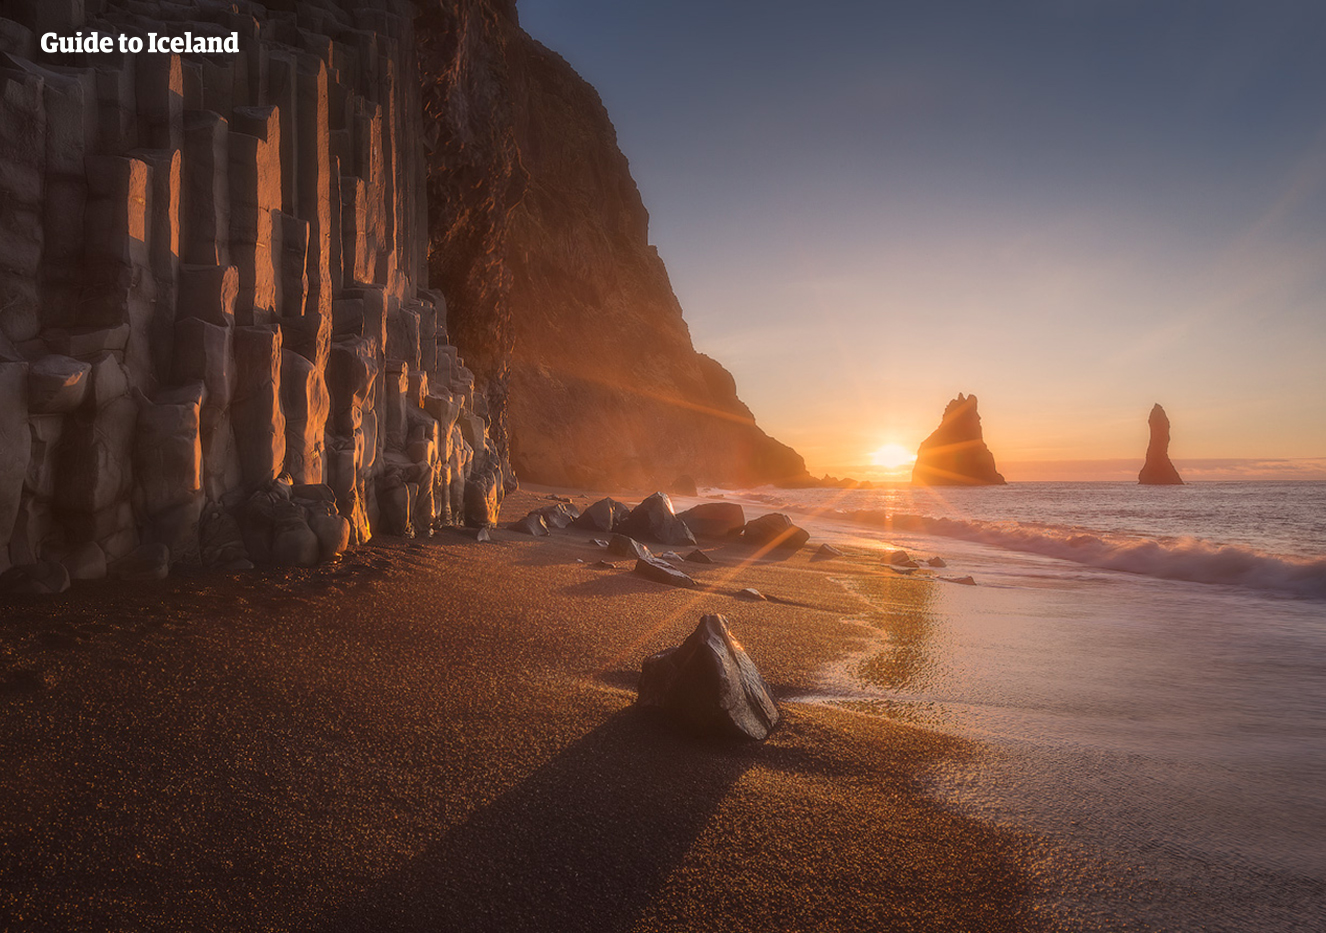 พระอาทิตย์ส่องแสงบนหาดทรายดำเรย์นิสฟยาราซึ่งอยู่ริมผาเสาหินบะซอลต์หกเหลี่ยม